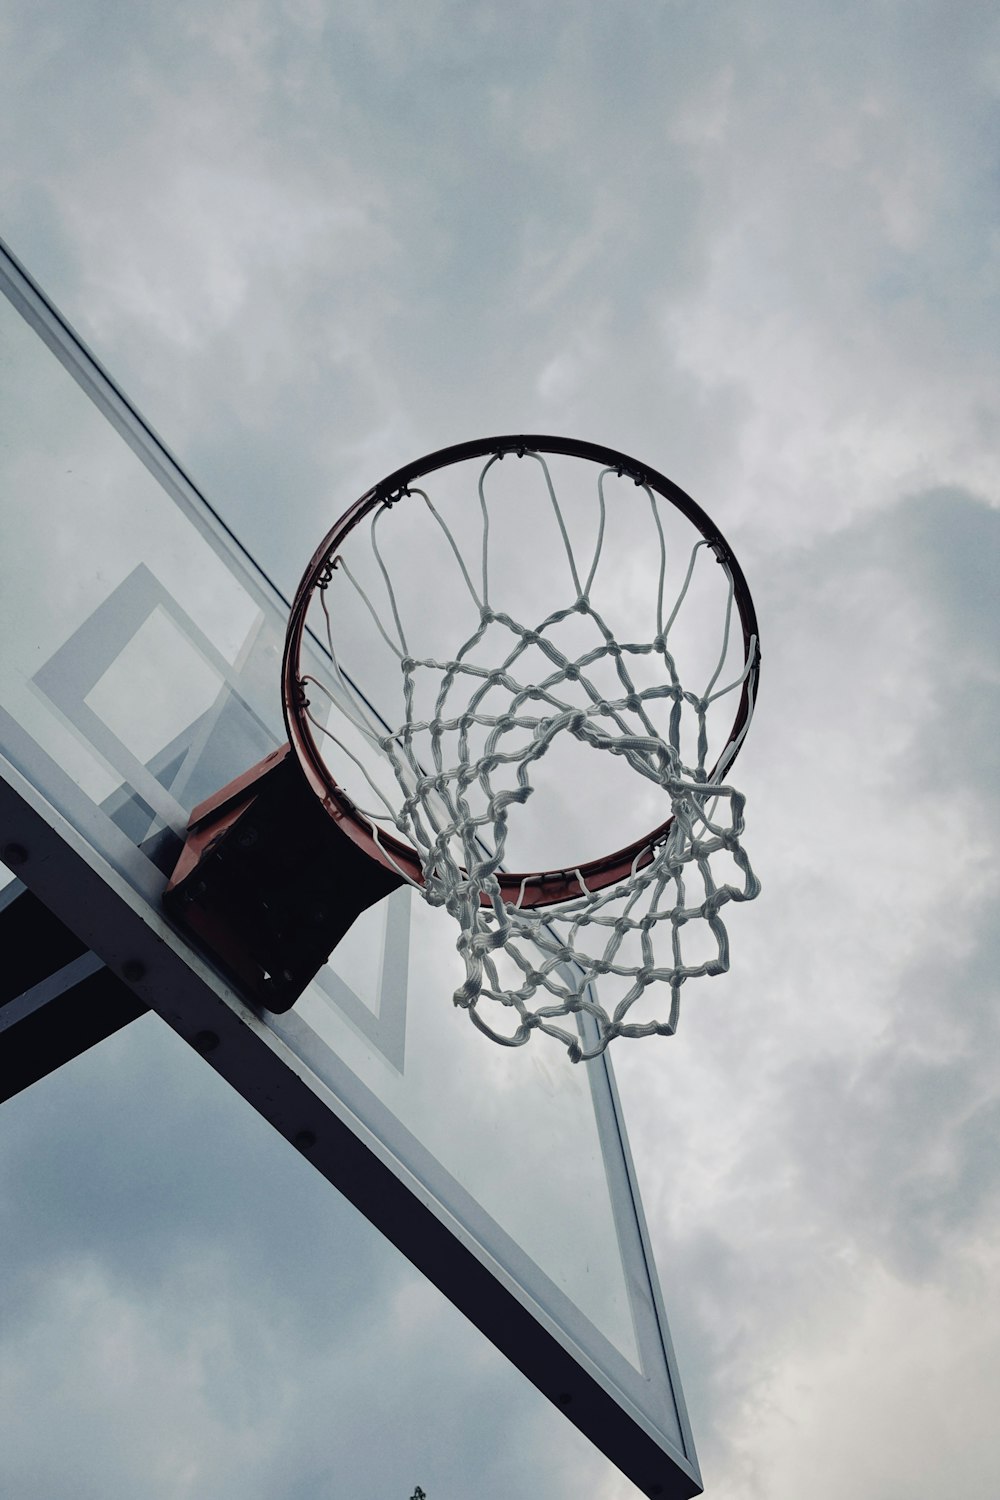 uma bola de basquete passando pelo aro de uma quadra de basquete